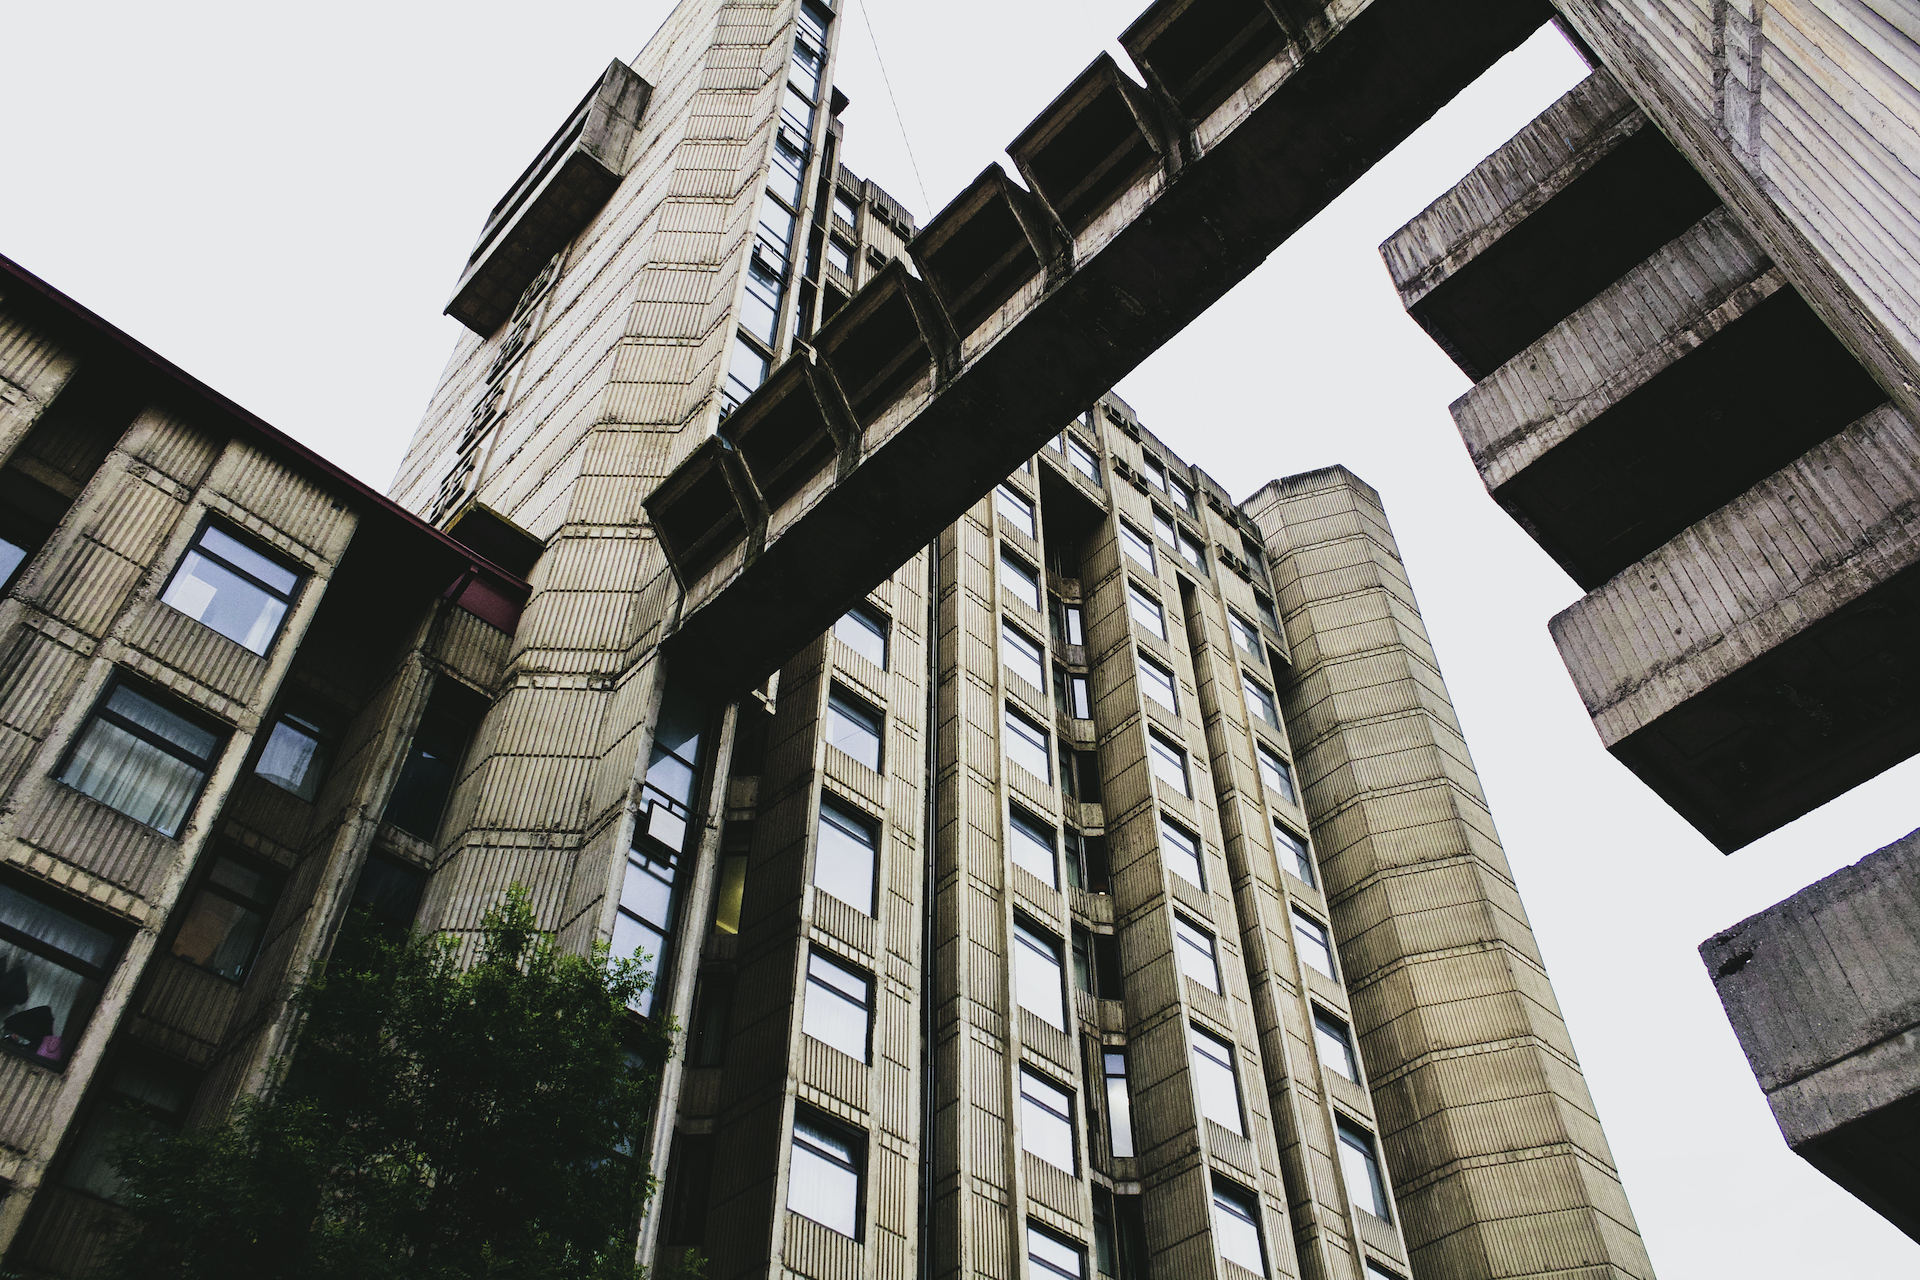 photograph: concrete buildings